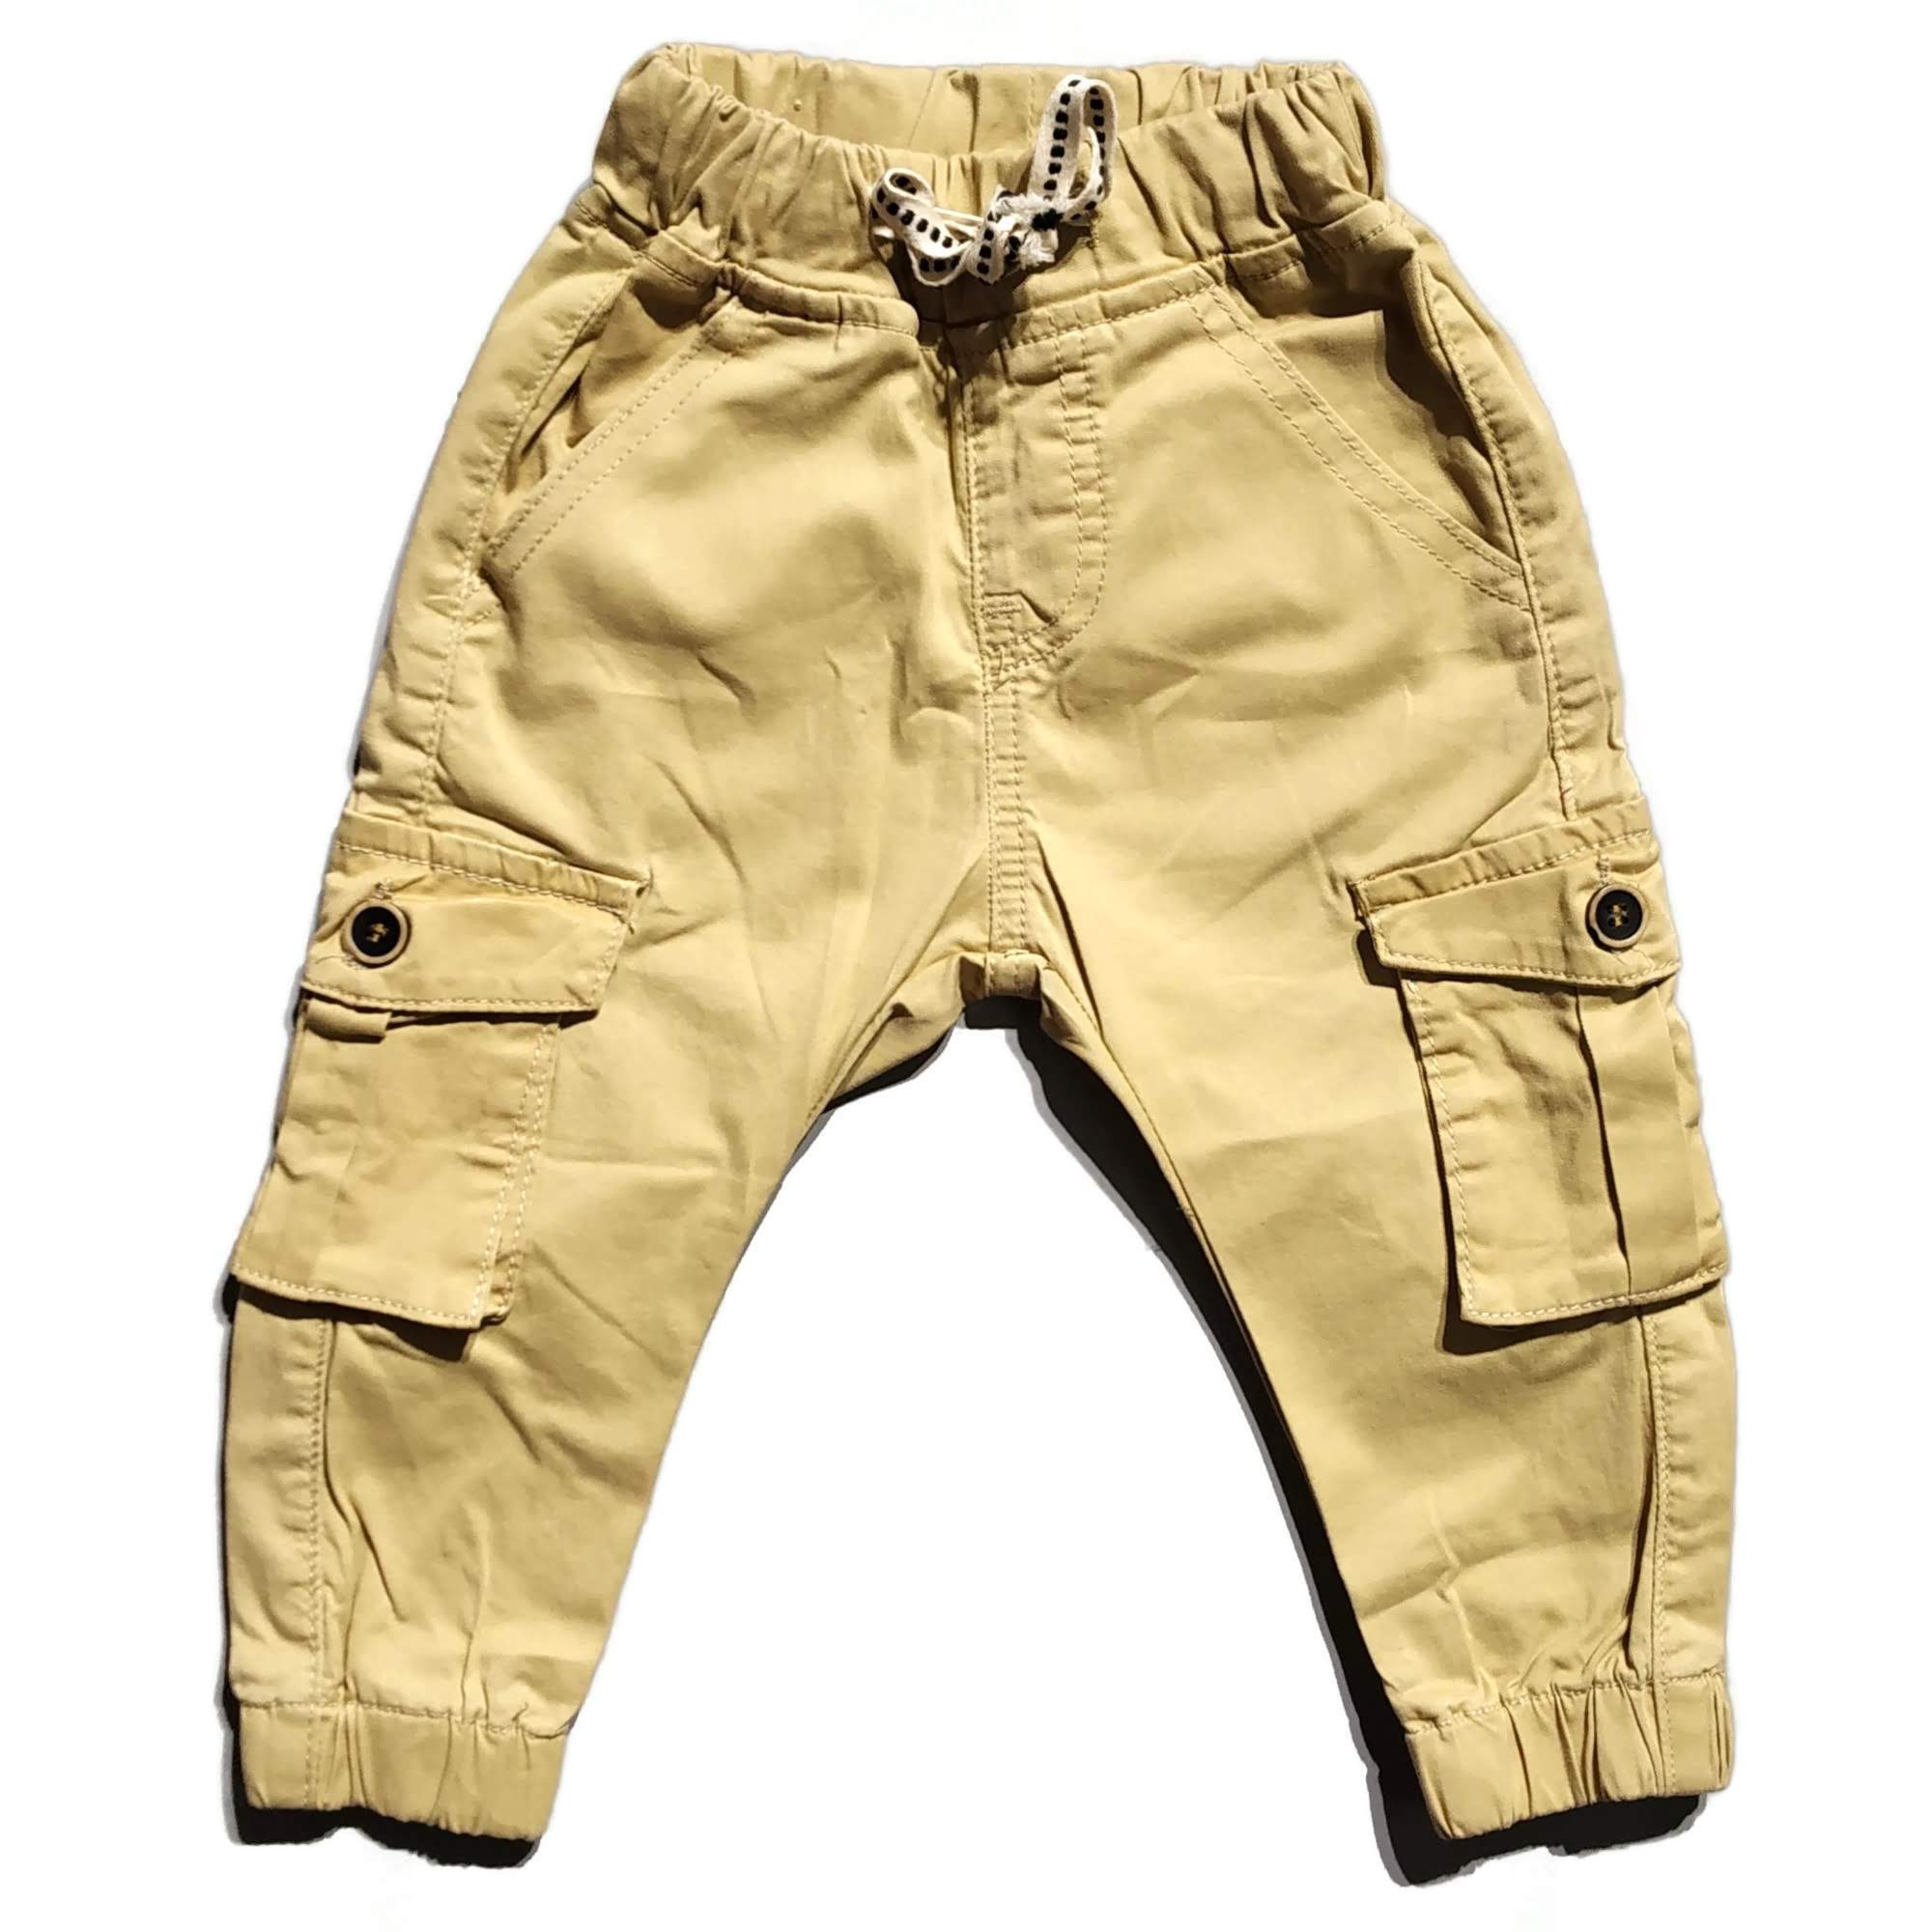 223PRAGUE Satiny cargo pants - Pants & Jeans - Maje.com